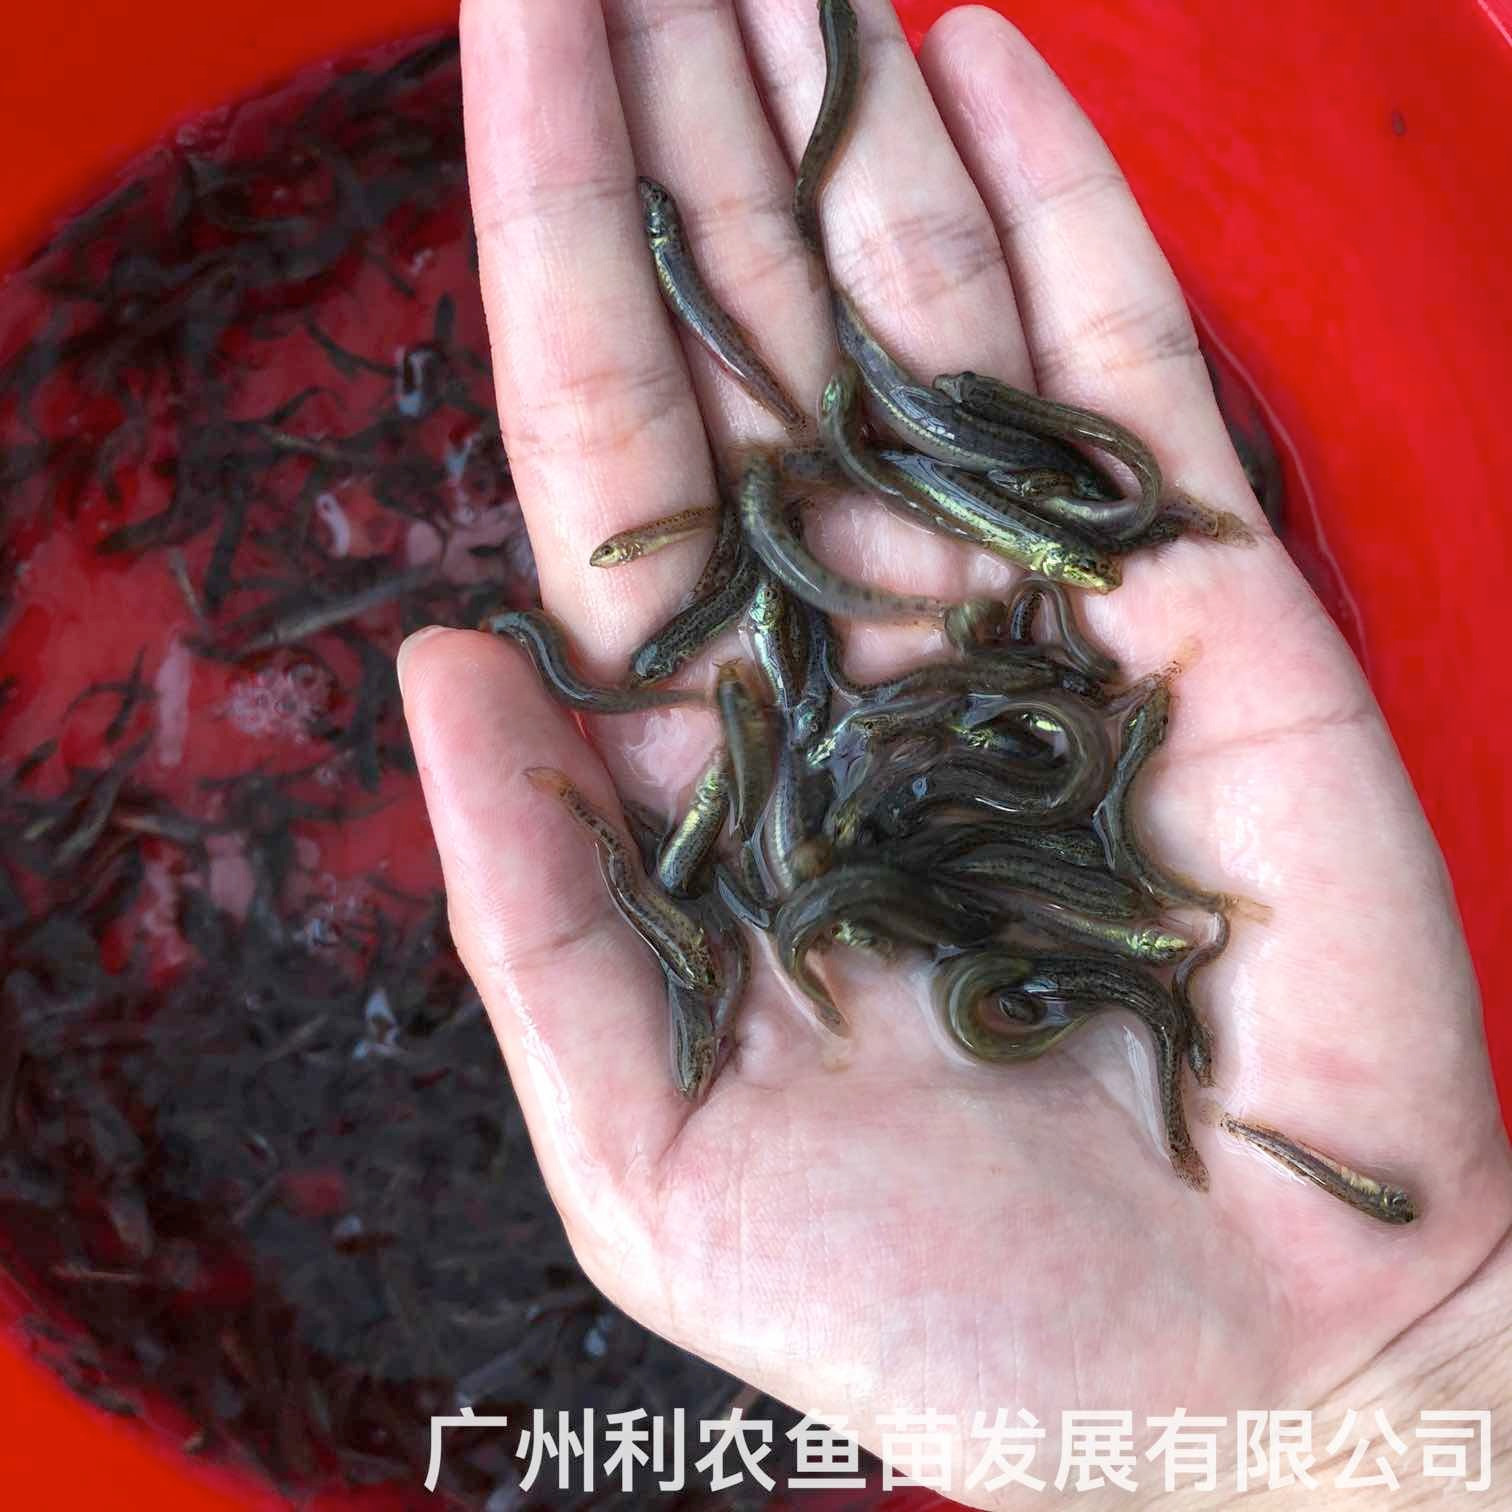 广西桂林台湾泥鳅苗出售广西来宾泥鳅鱼苗批发